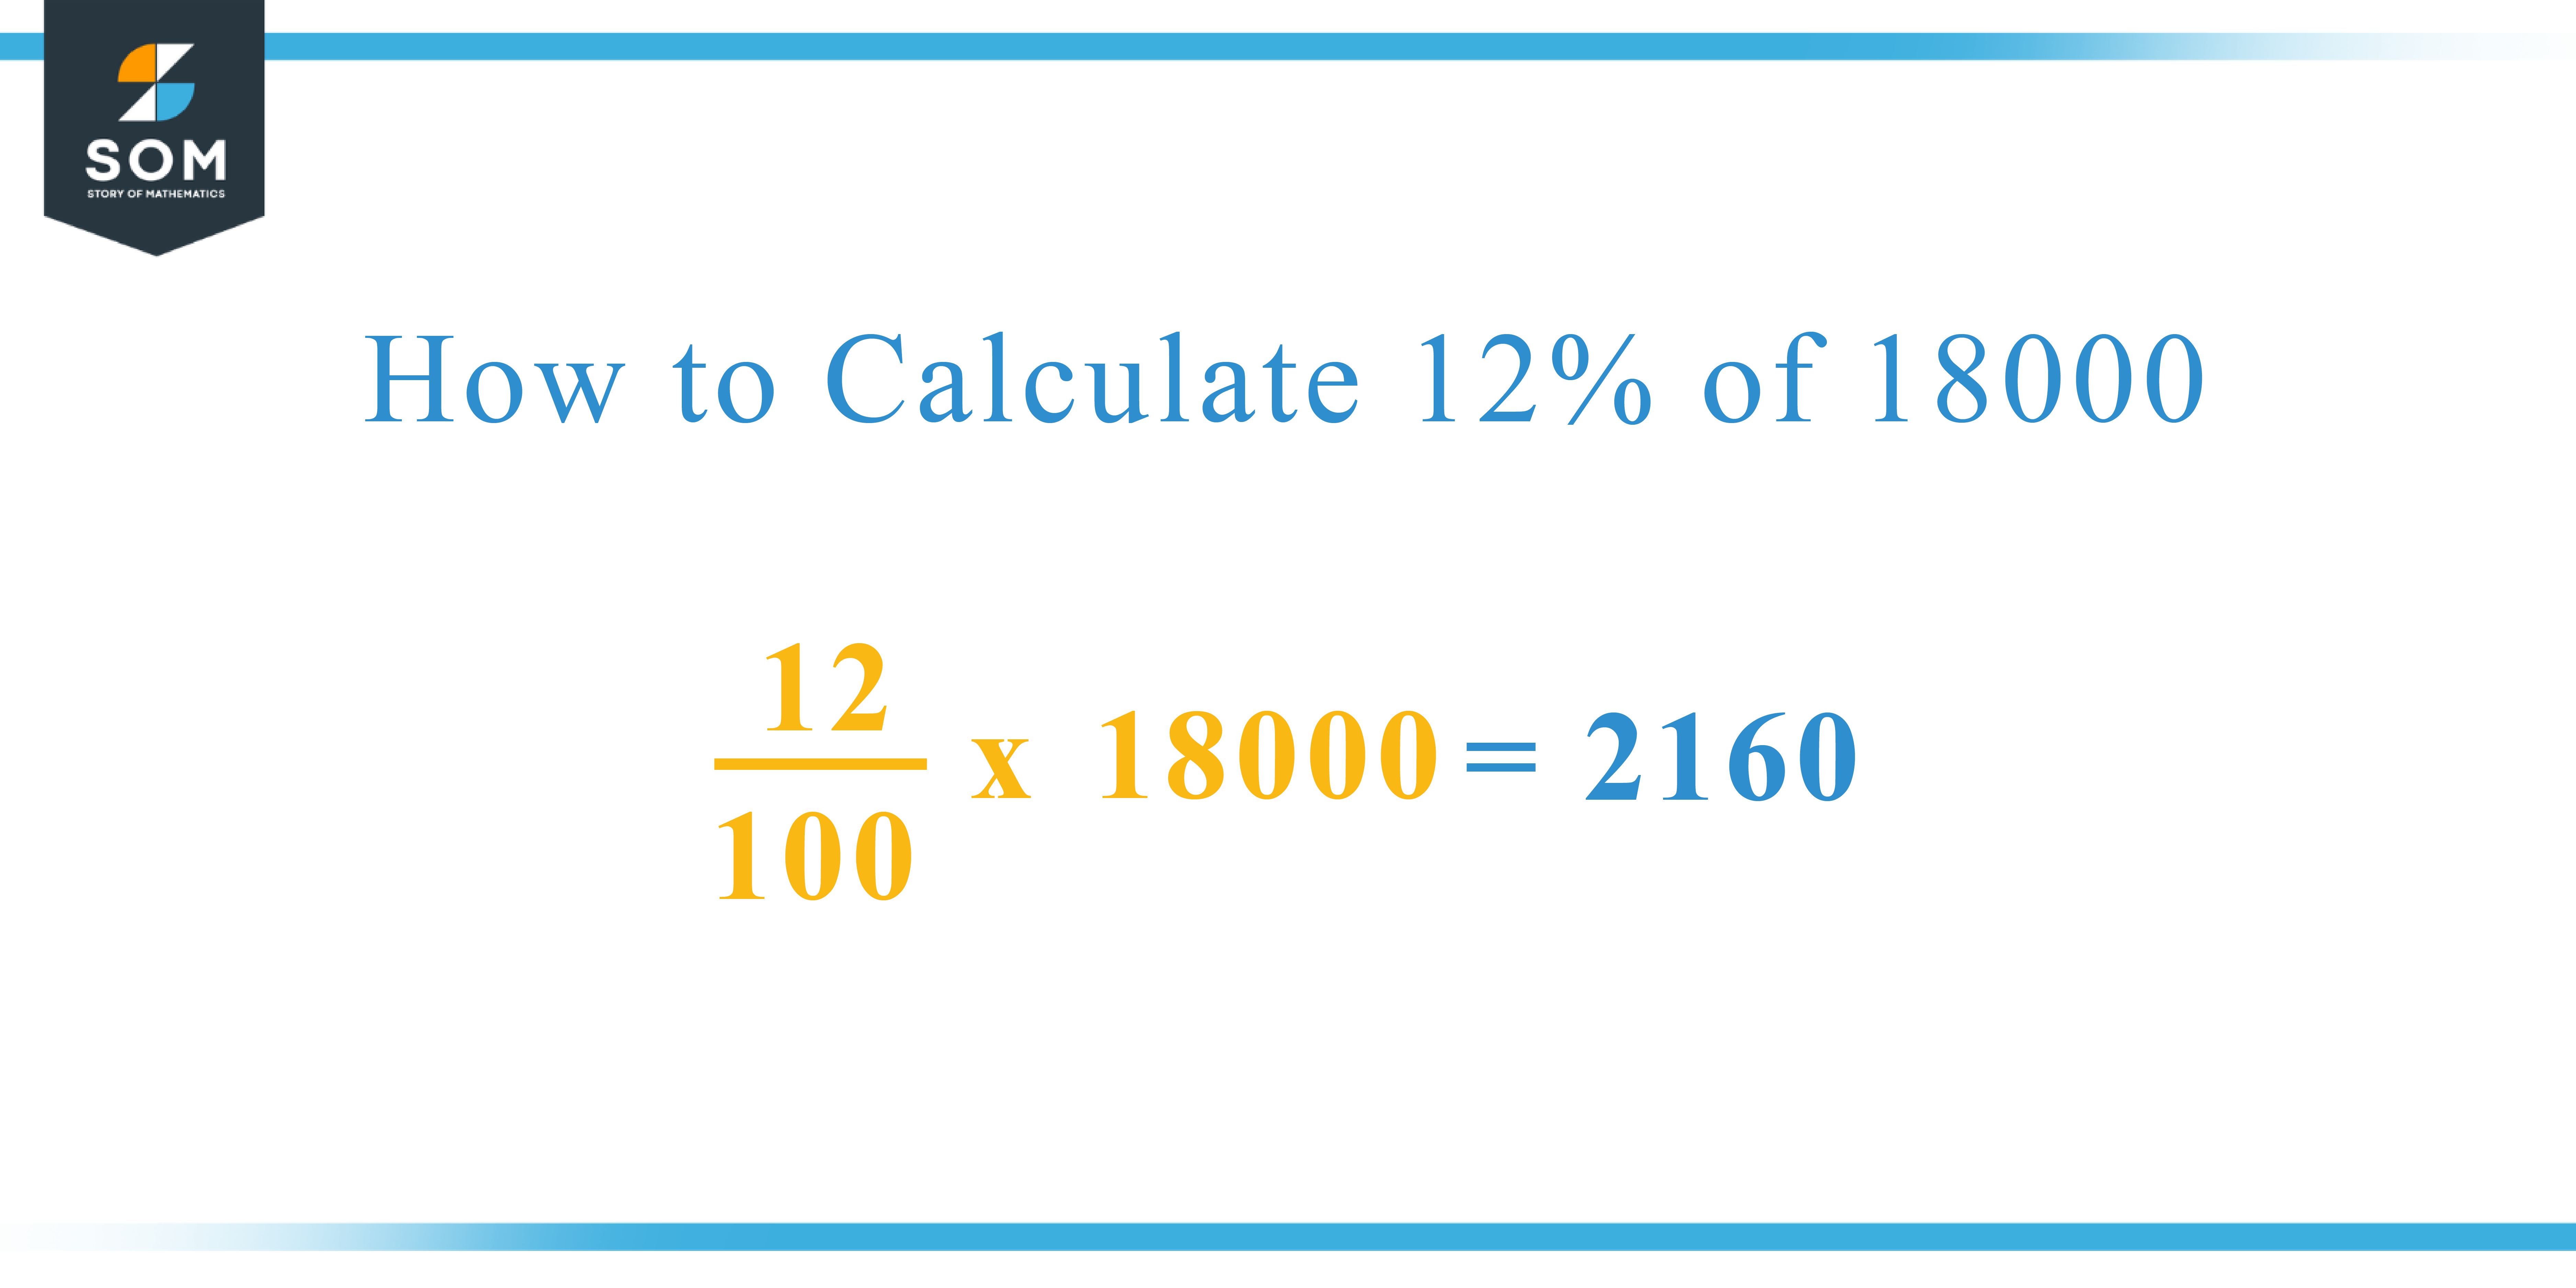 Calculation 12 percent of 18000